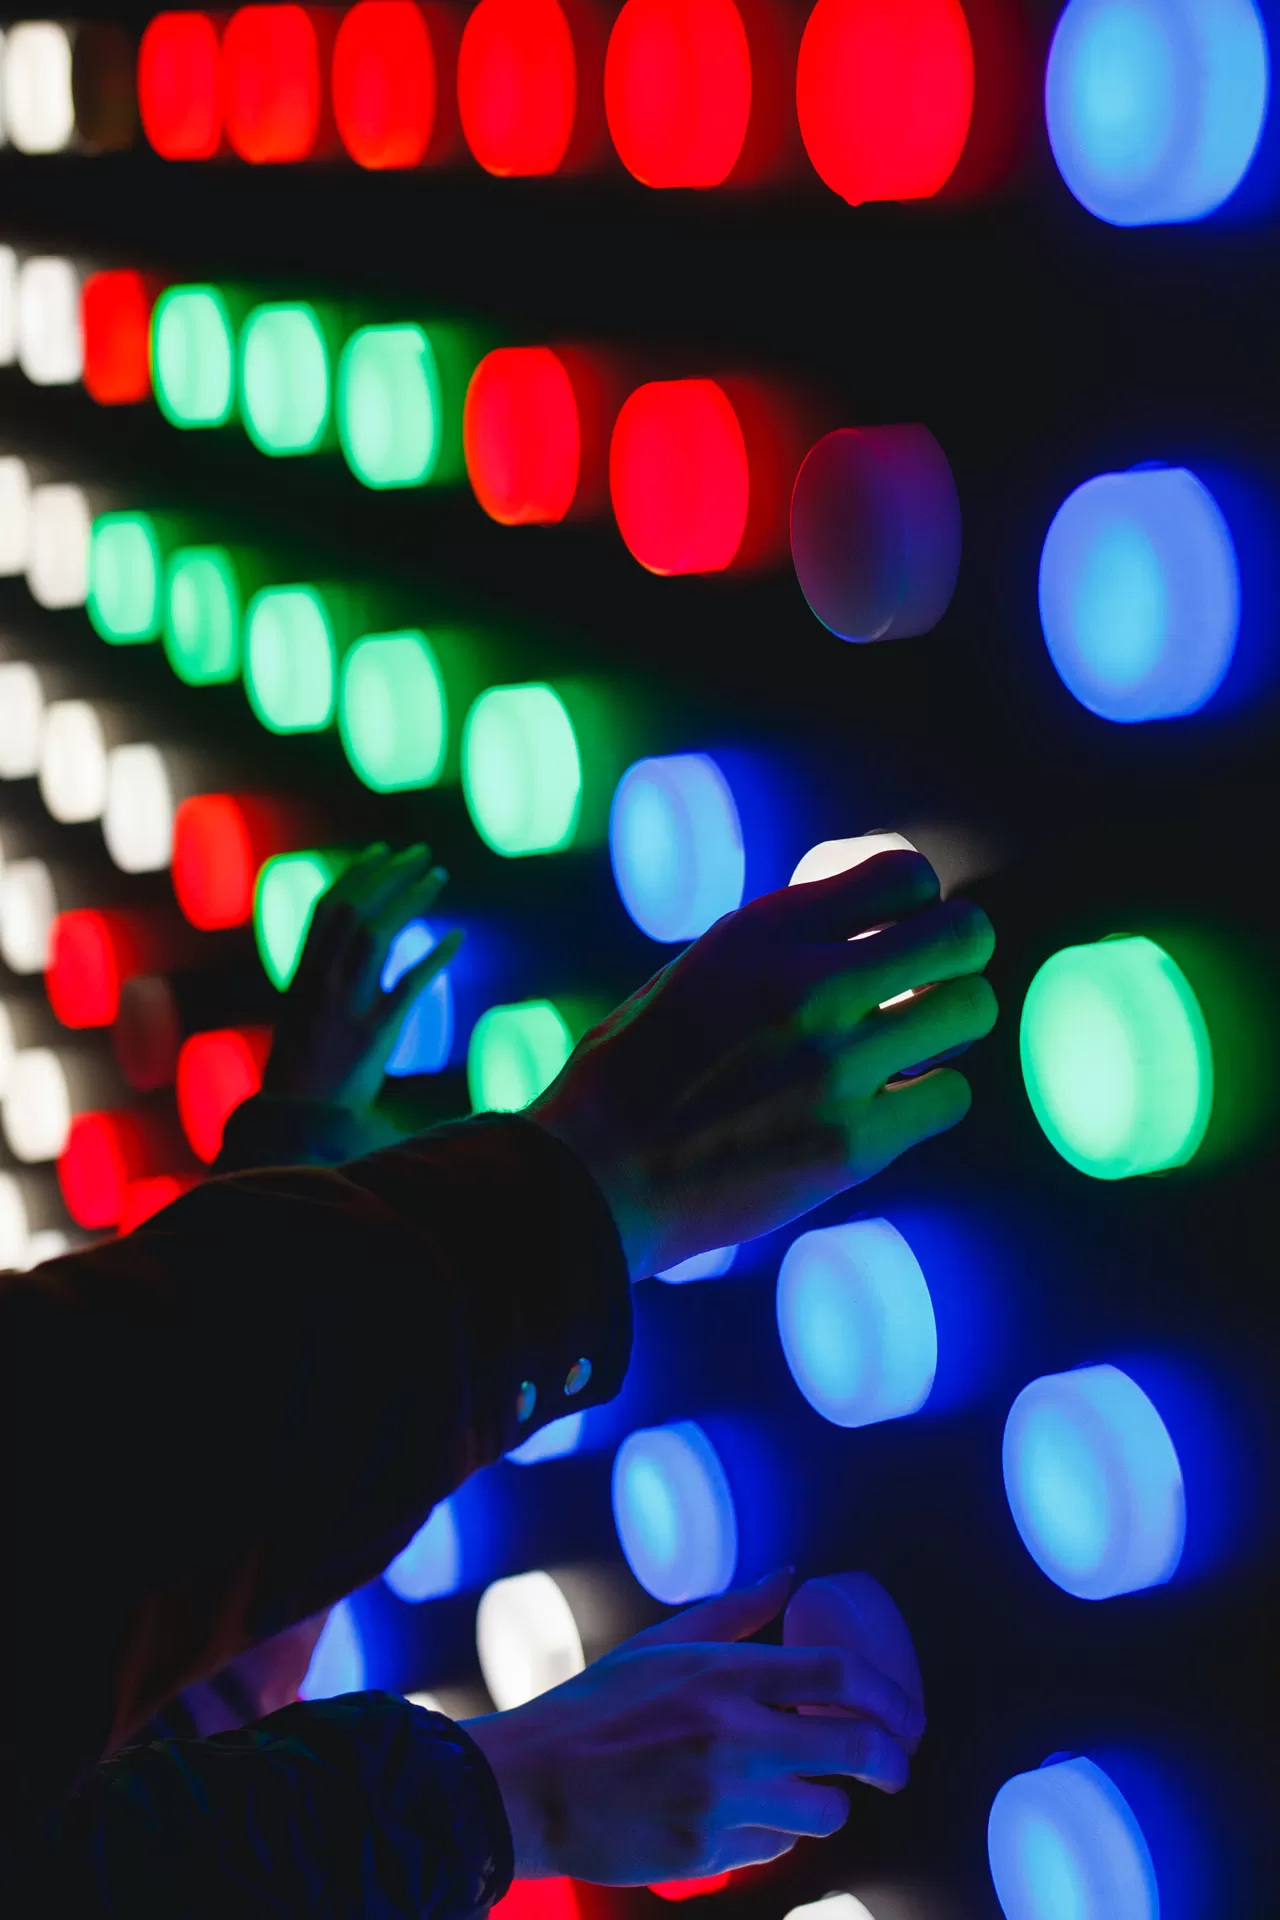 Interaktive Wand mit farbigen Lichtern und Hände die damit spielen.